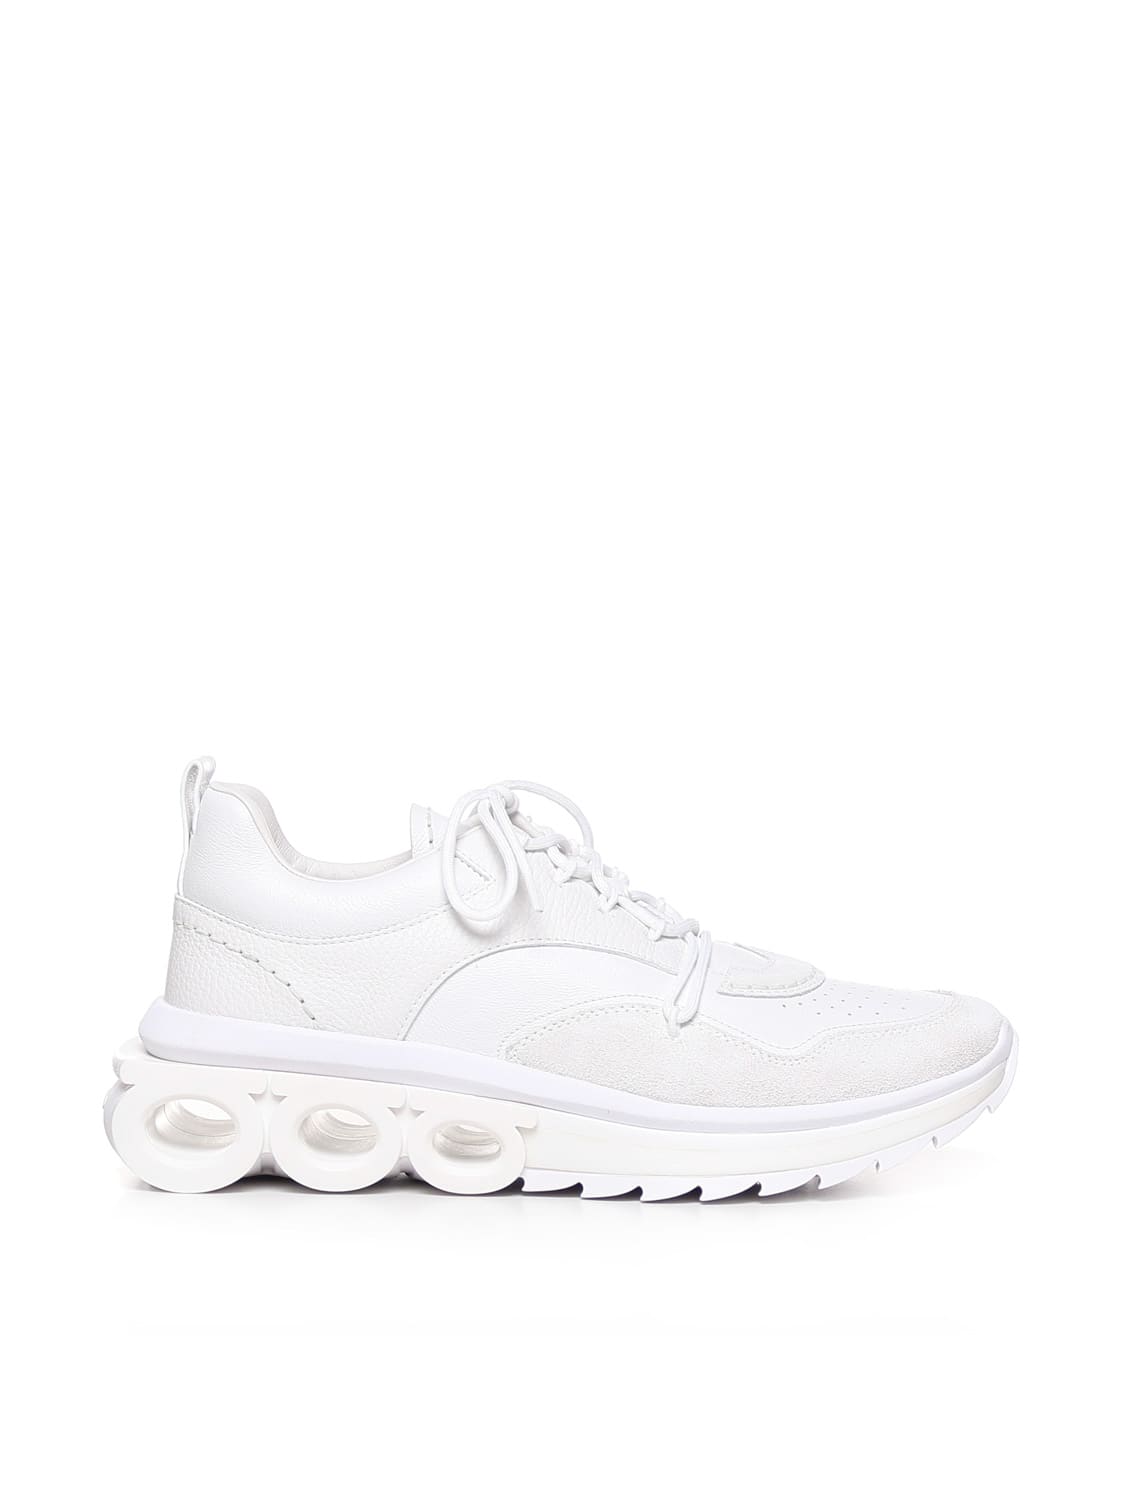 Ferragamo Sneakers With Gancini Plaque In White